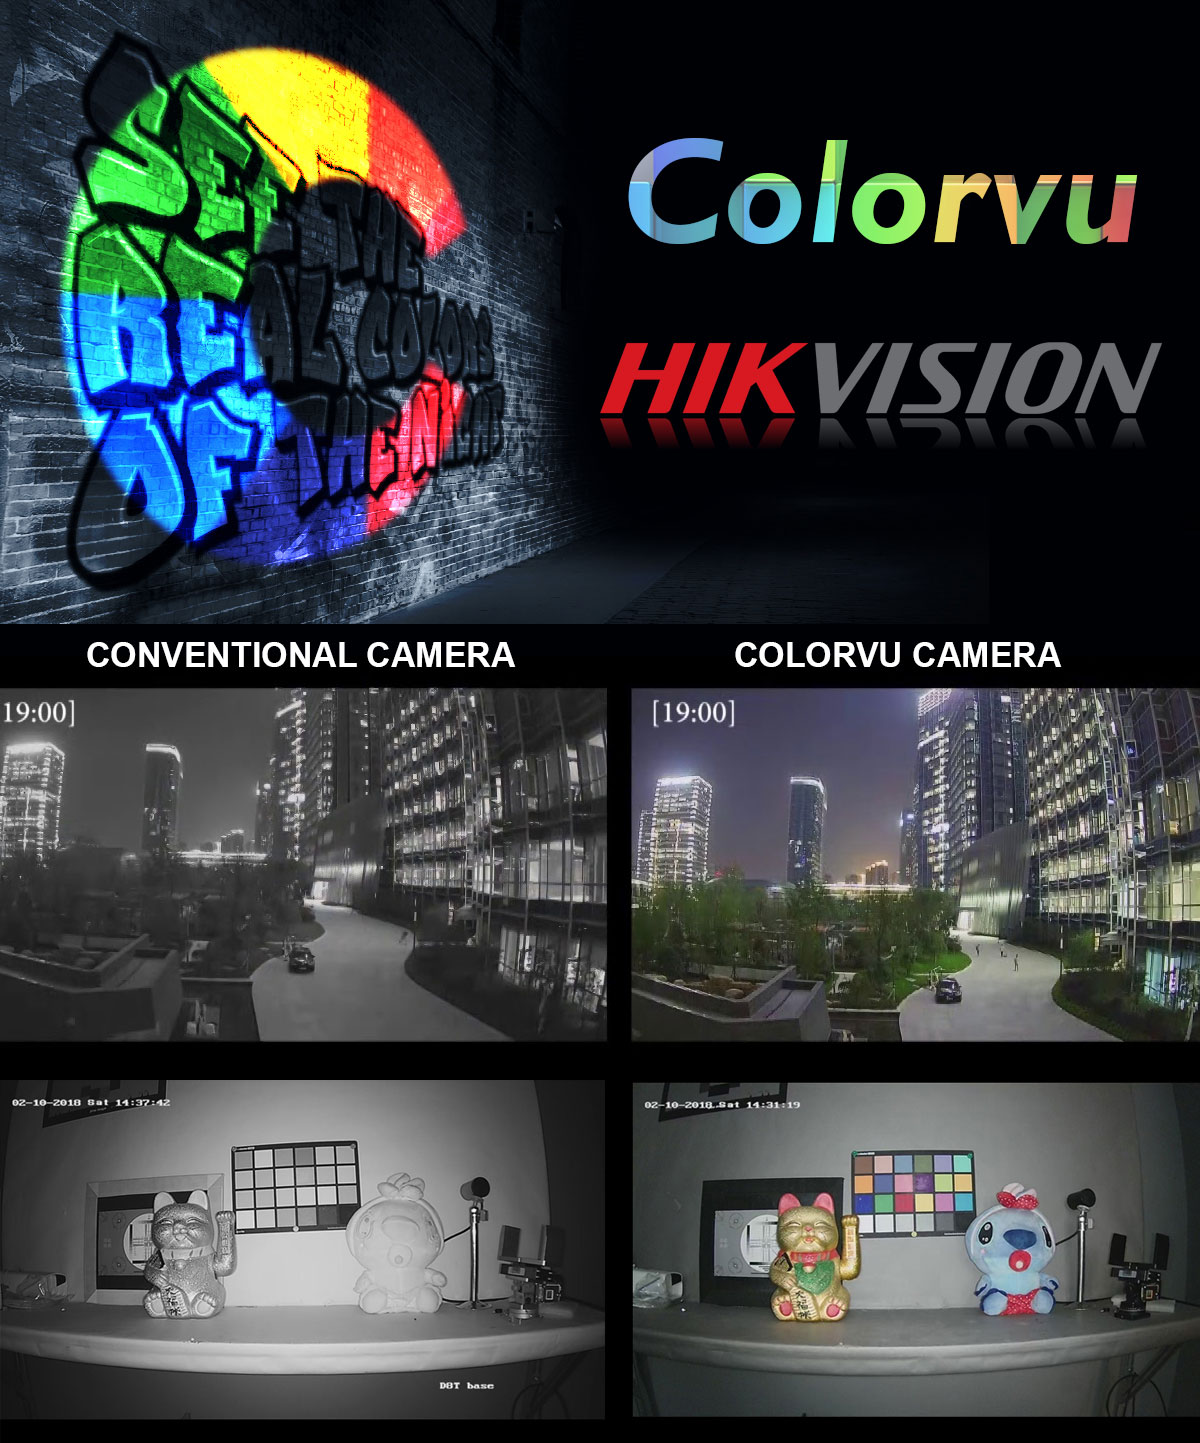 بررسی تکنولوژی ColorVu هایک ویژن